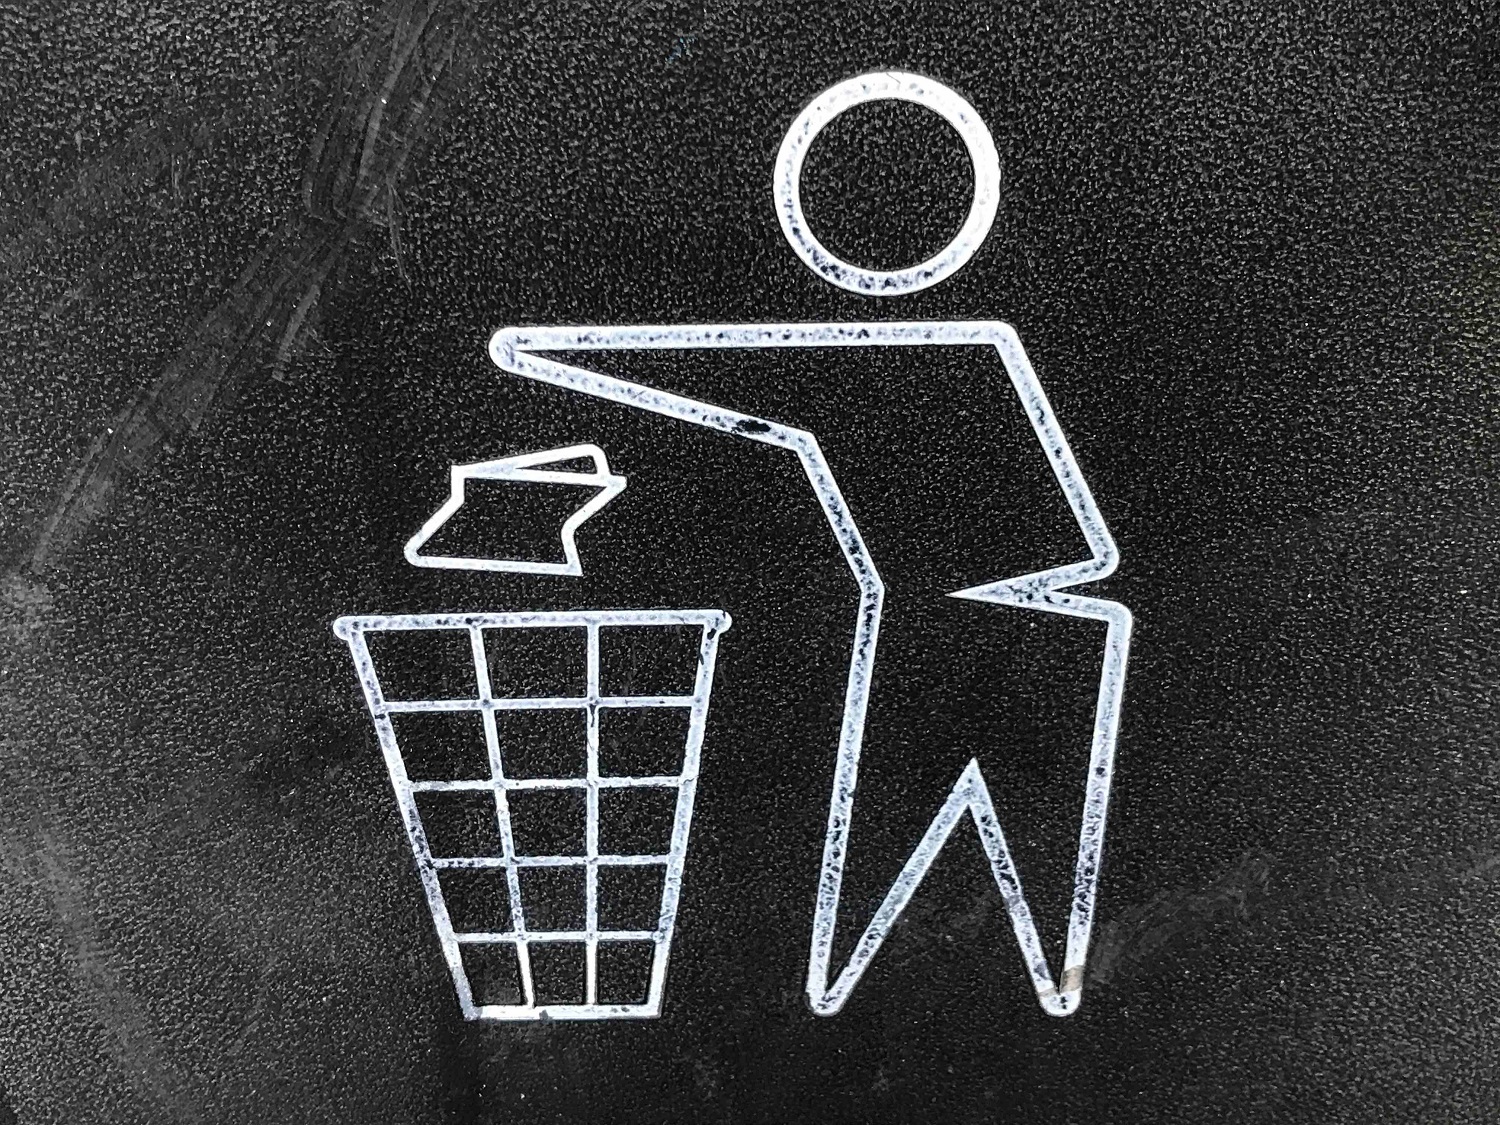 7 iš 10 gyventojų rūšiuoja atliekas, bet ar daro tai tinkamai? Rūšiavimo principai, kuriuos verta prisiminti